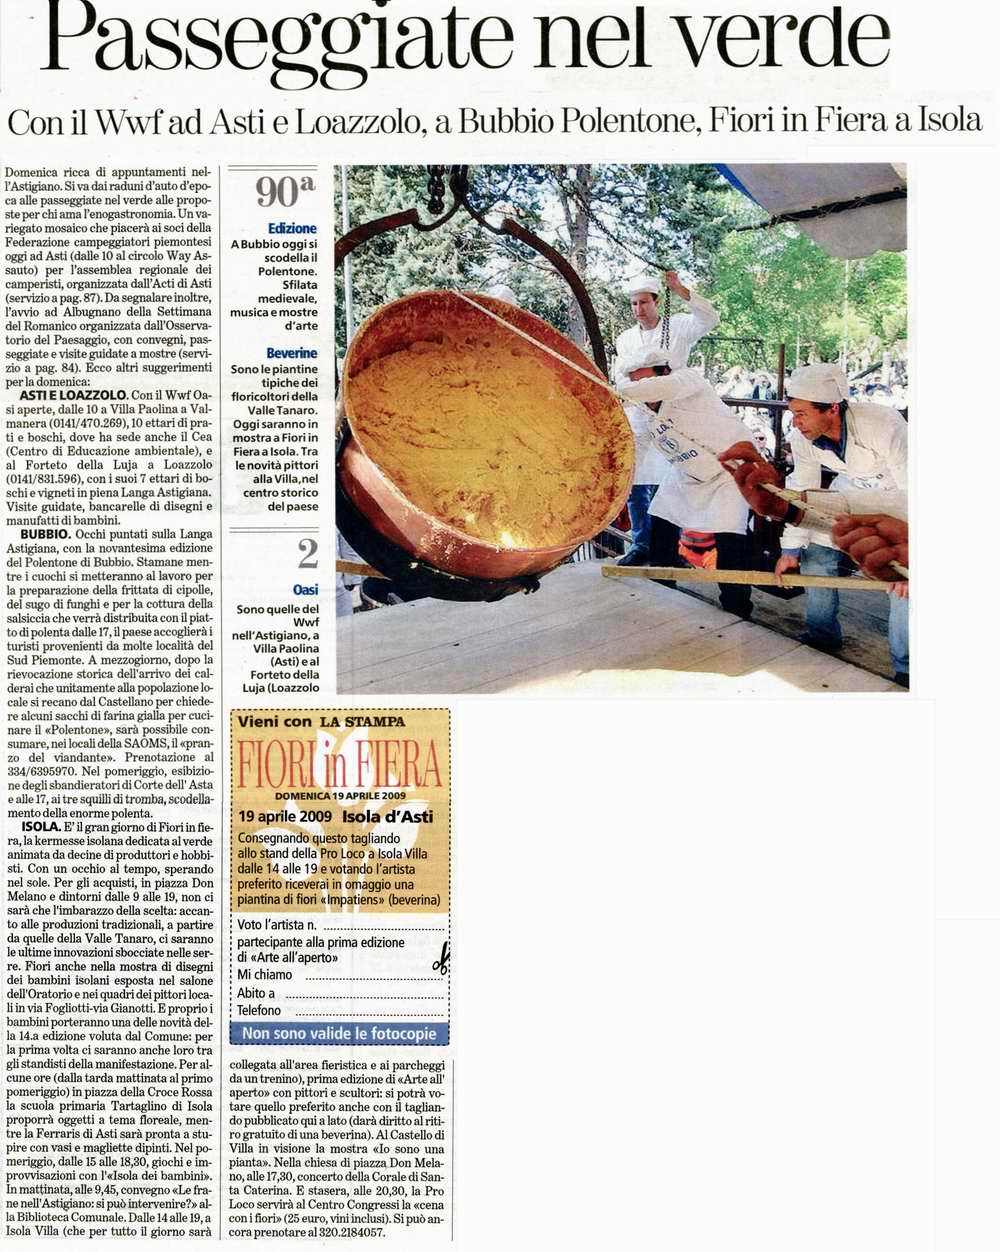 Rassegna stampa - Fiori in Fiera - La Stampa (Domenica 19 Aprile 2009)